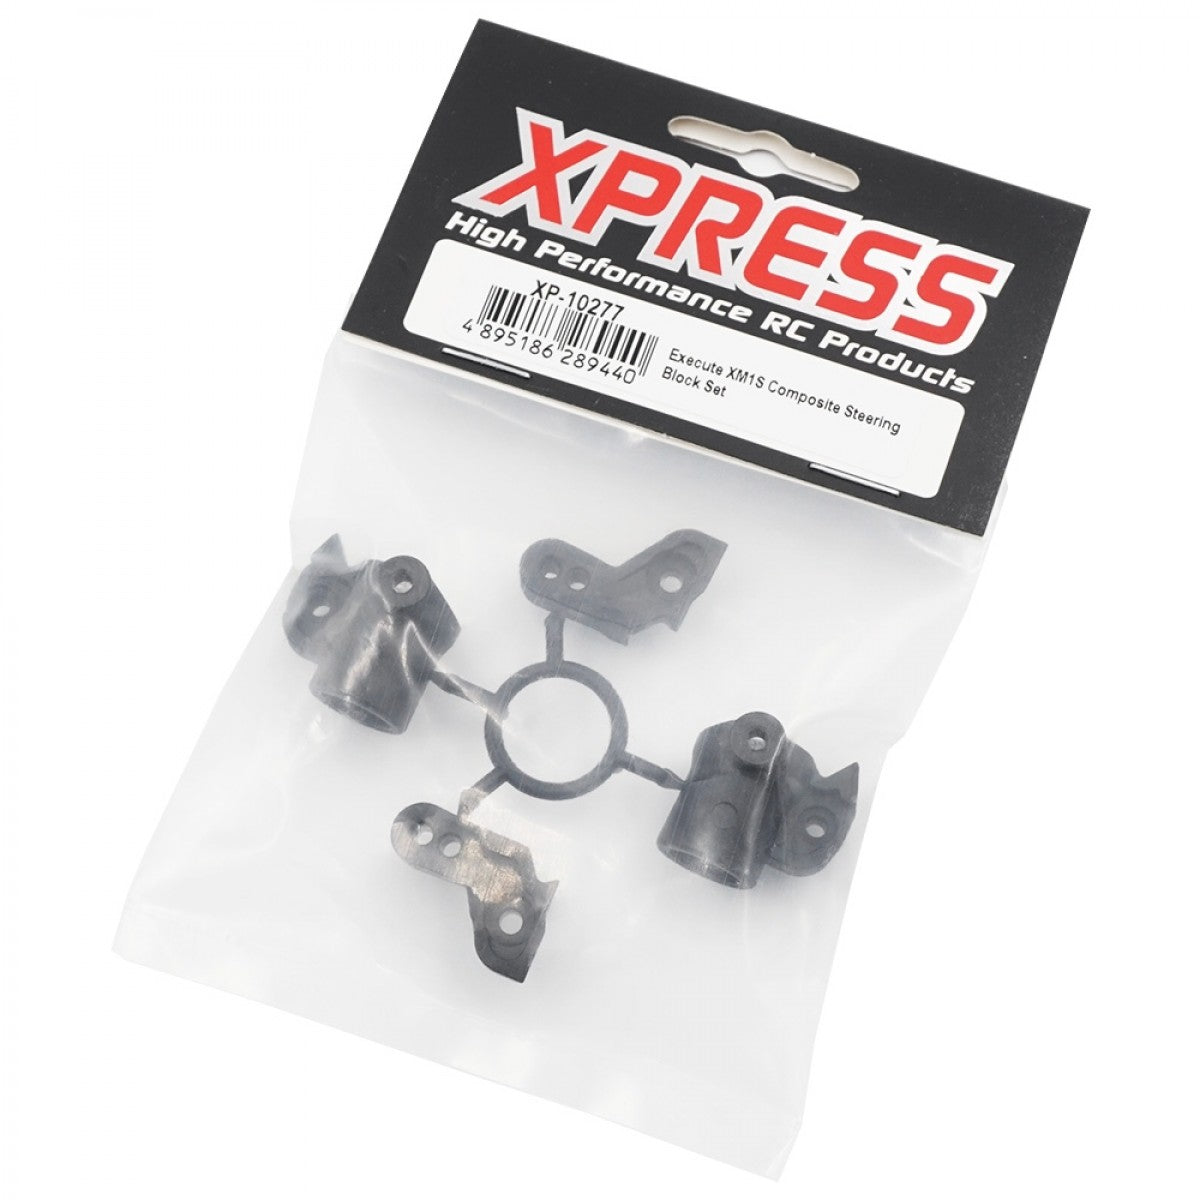 Xpress XP-10277 Composite Steering Block for XM1S FM1S (2 pcs)